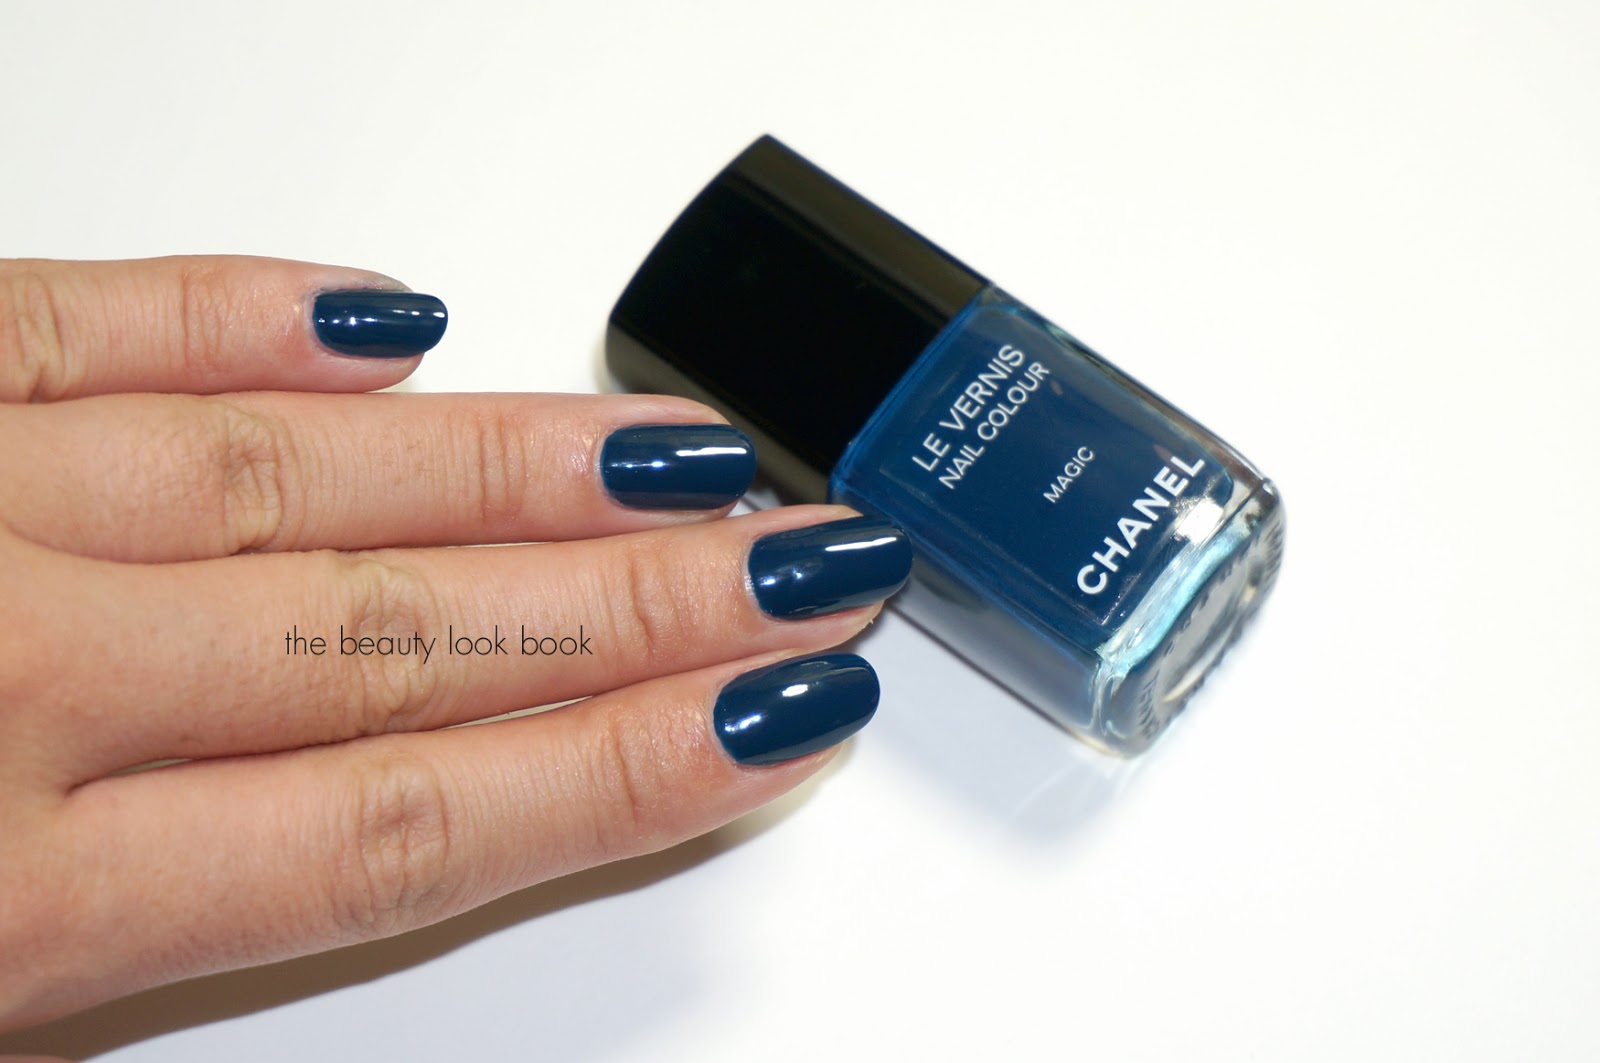 Chanel Blue Boy nail polish review